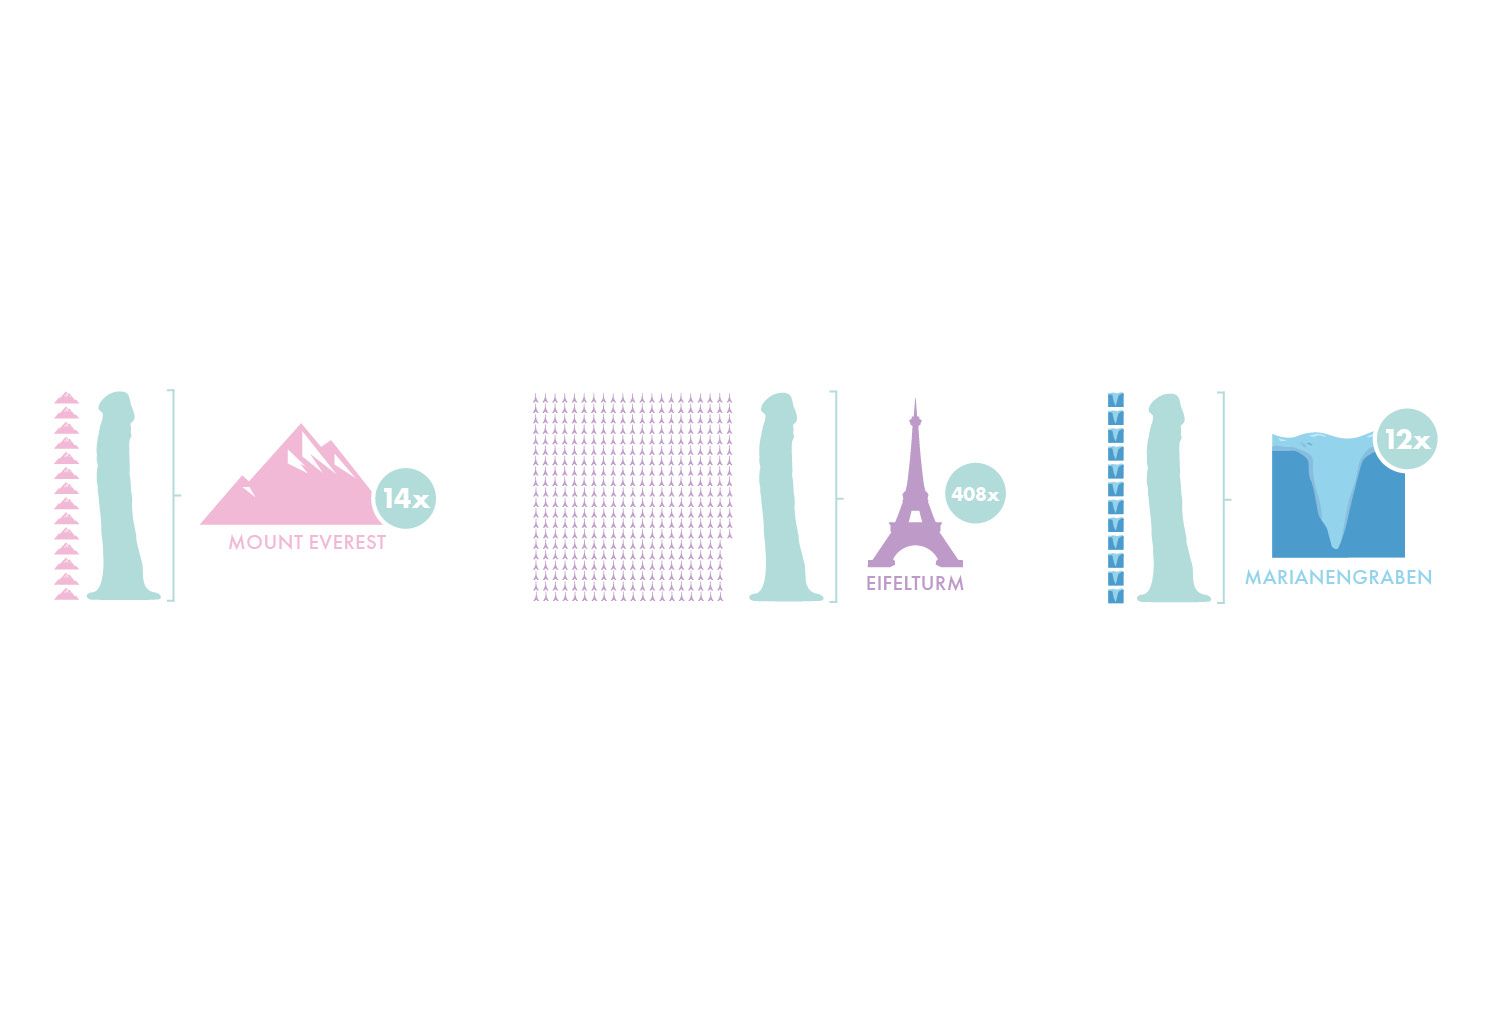 Grafik: Menge verkaufter Dildos im Vergleich zu Mount Everest, Eiffelturm und Mariannengraben